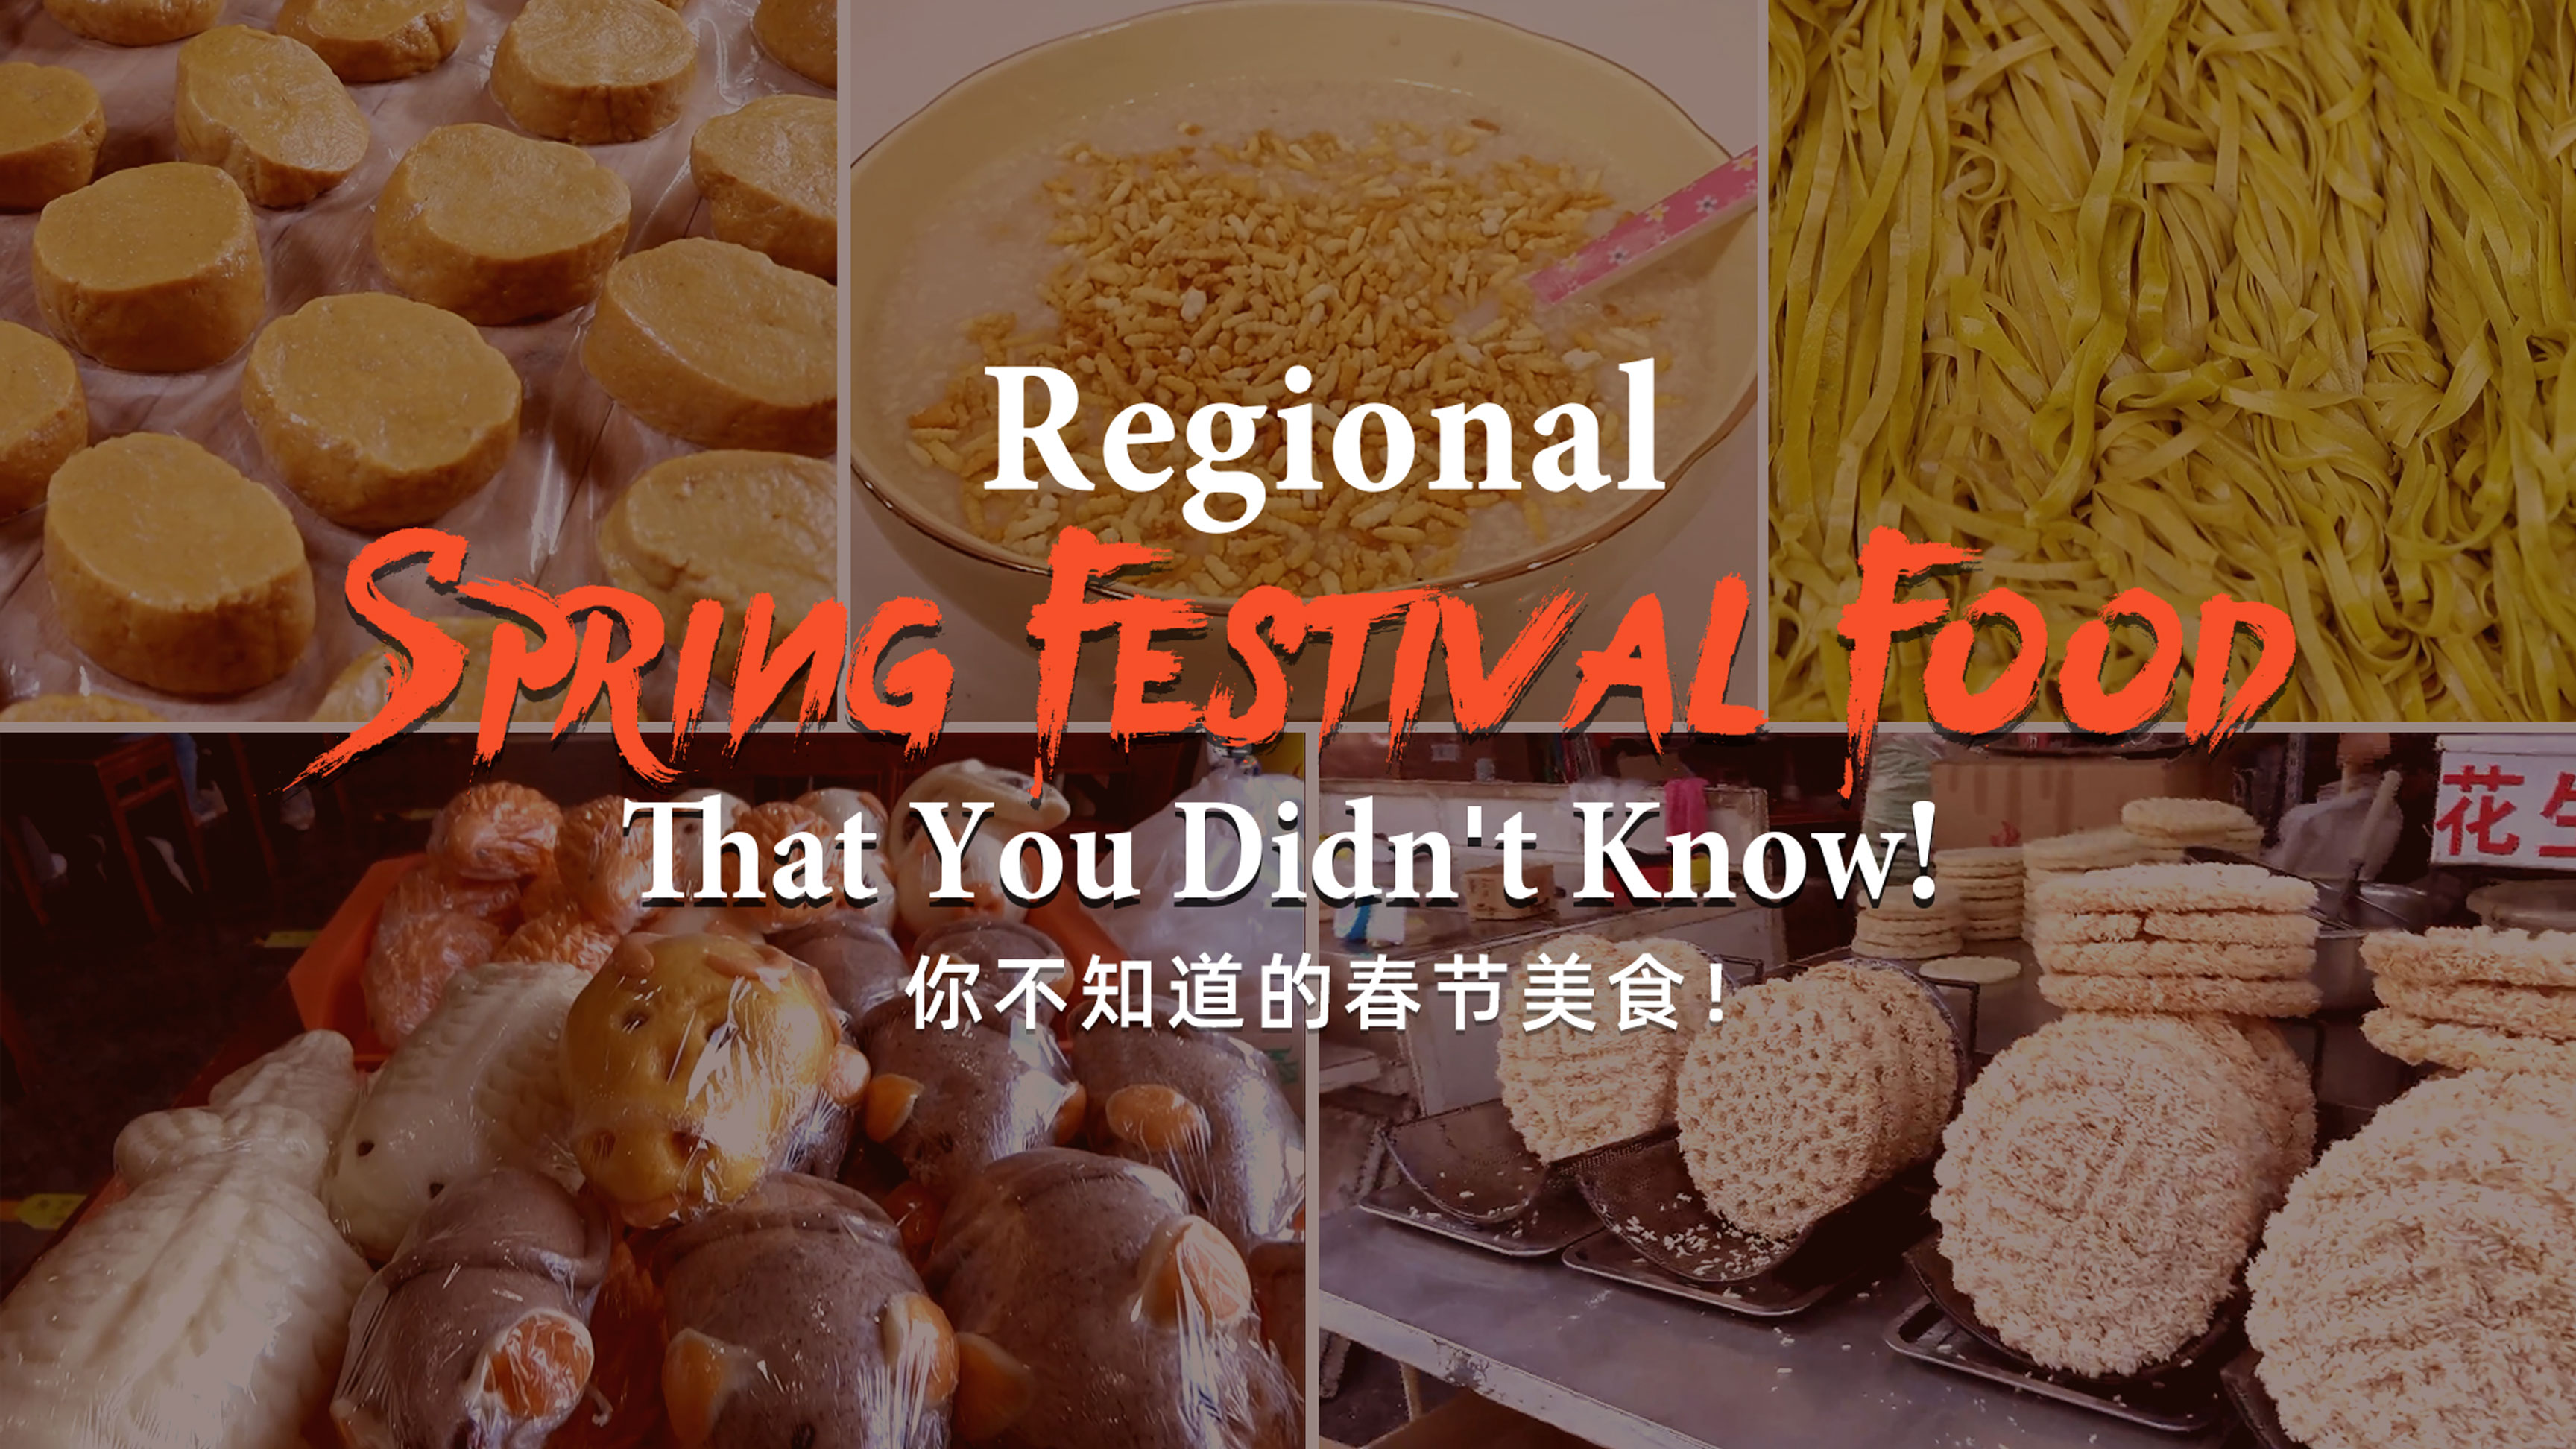 Regional Spring Festival food you probably didn't know CGTN